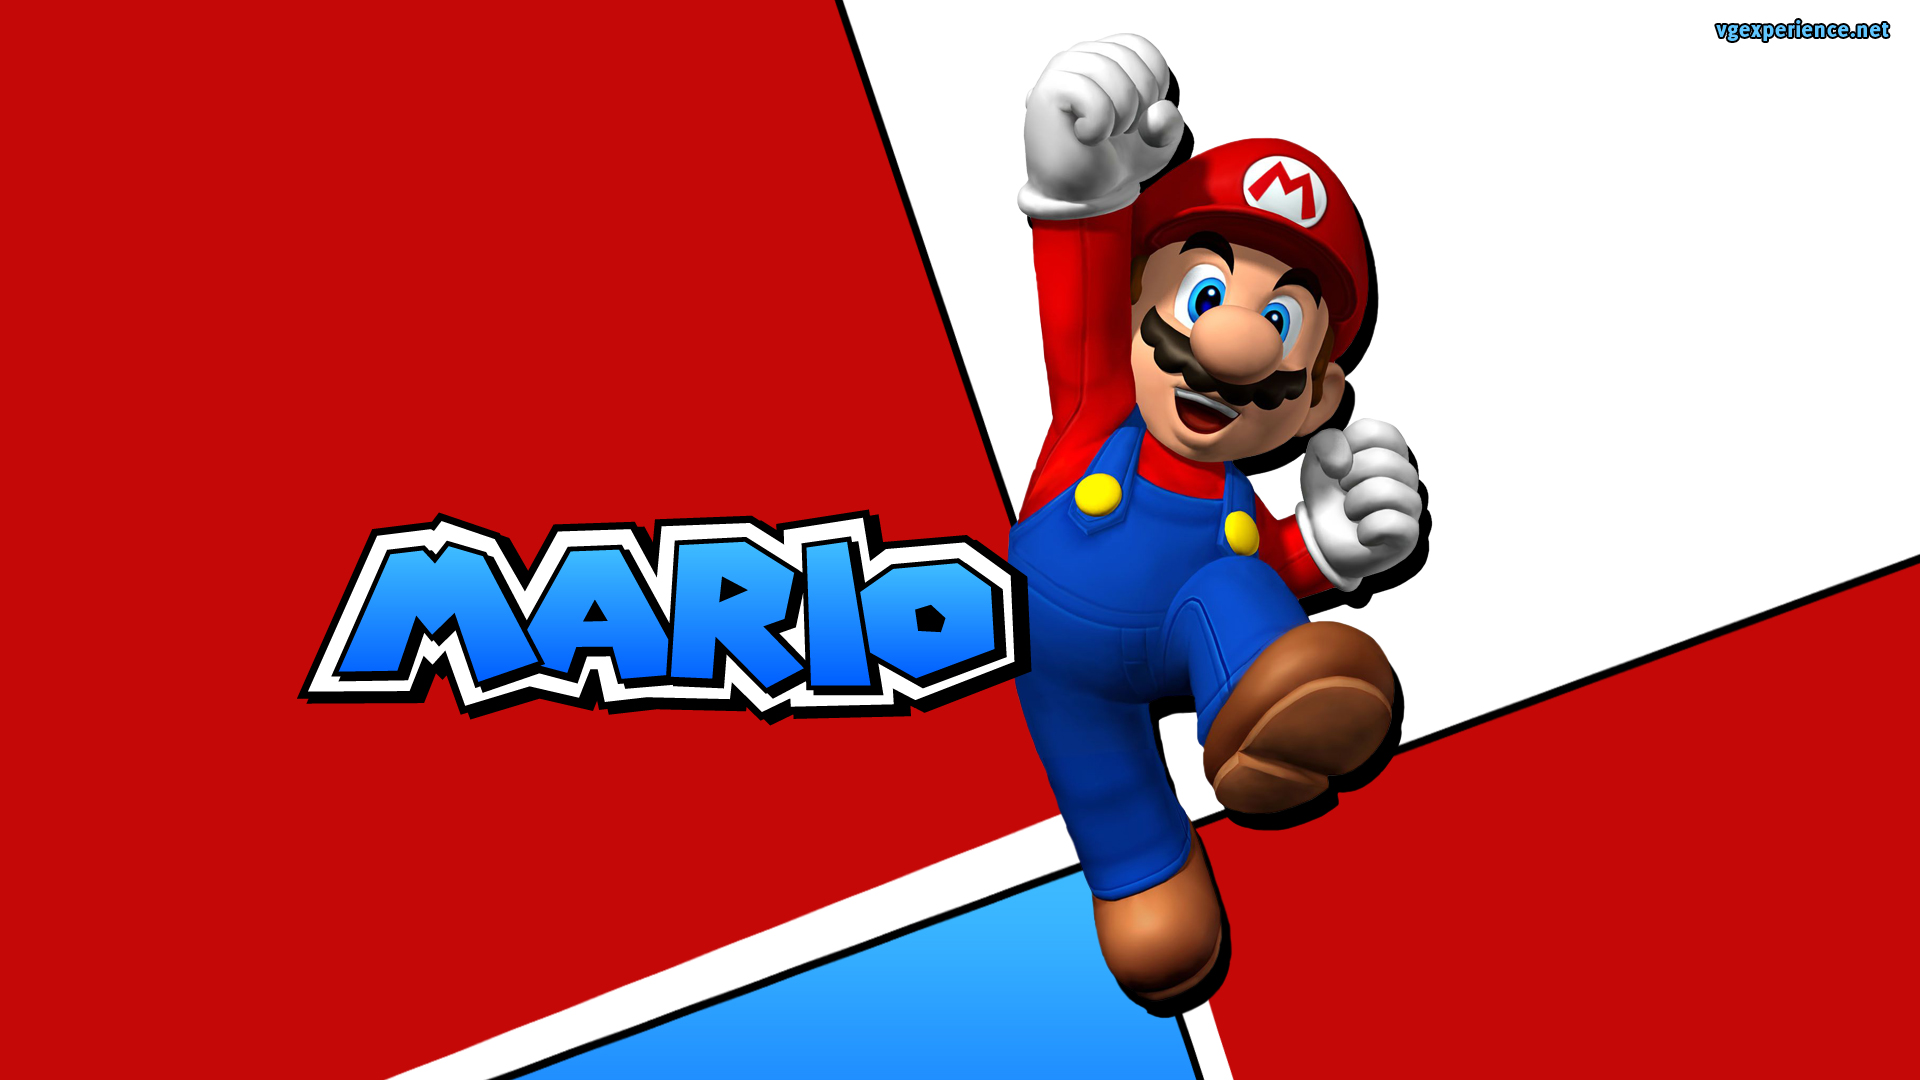 Descargar fondos de escritorio de Super Mario Advance Super Mario Bros 2 HD